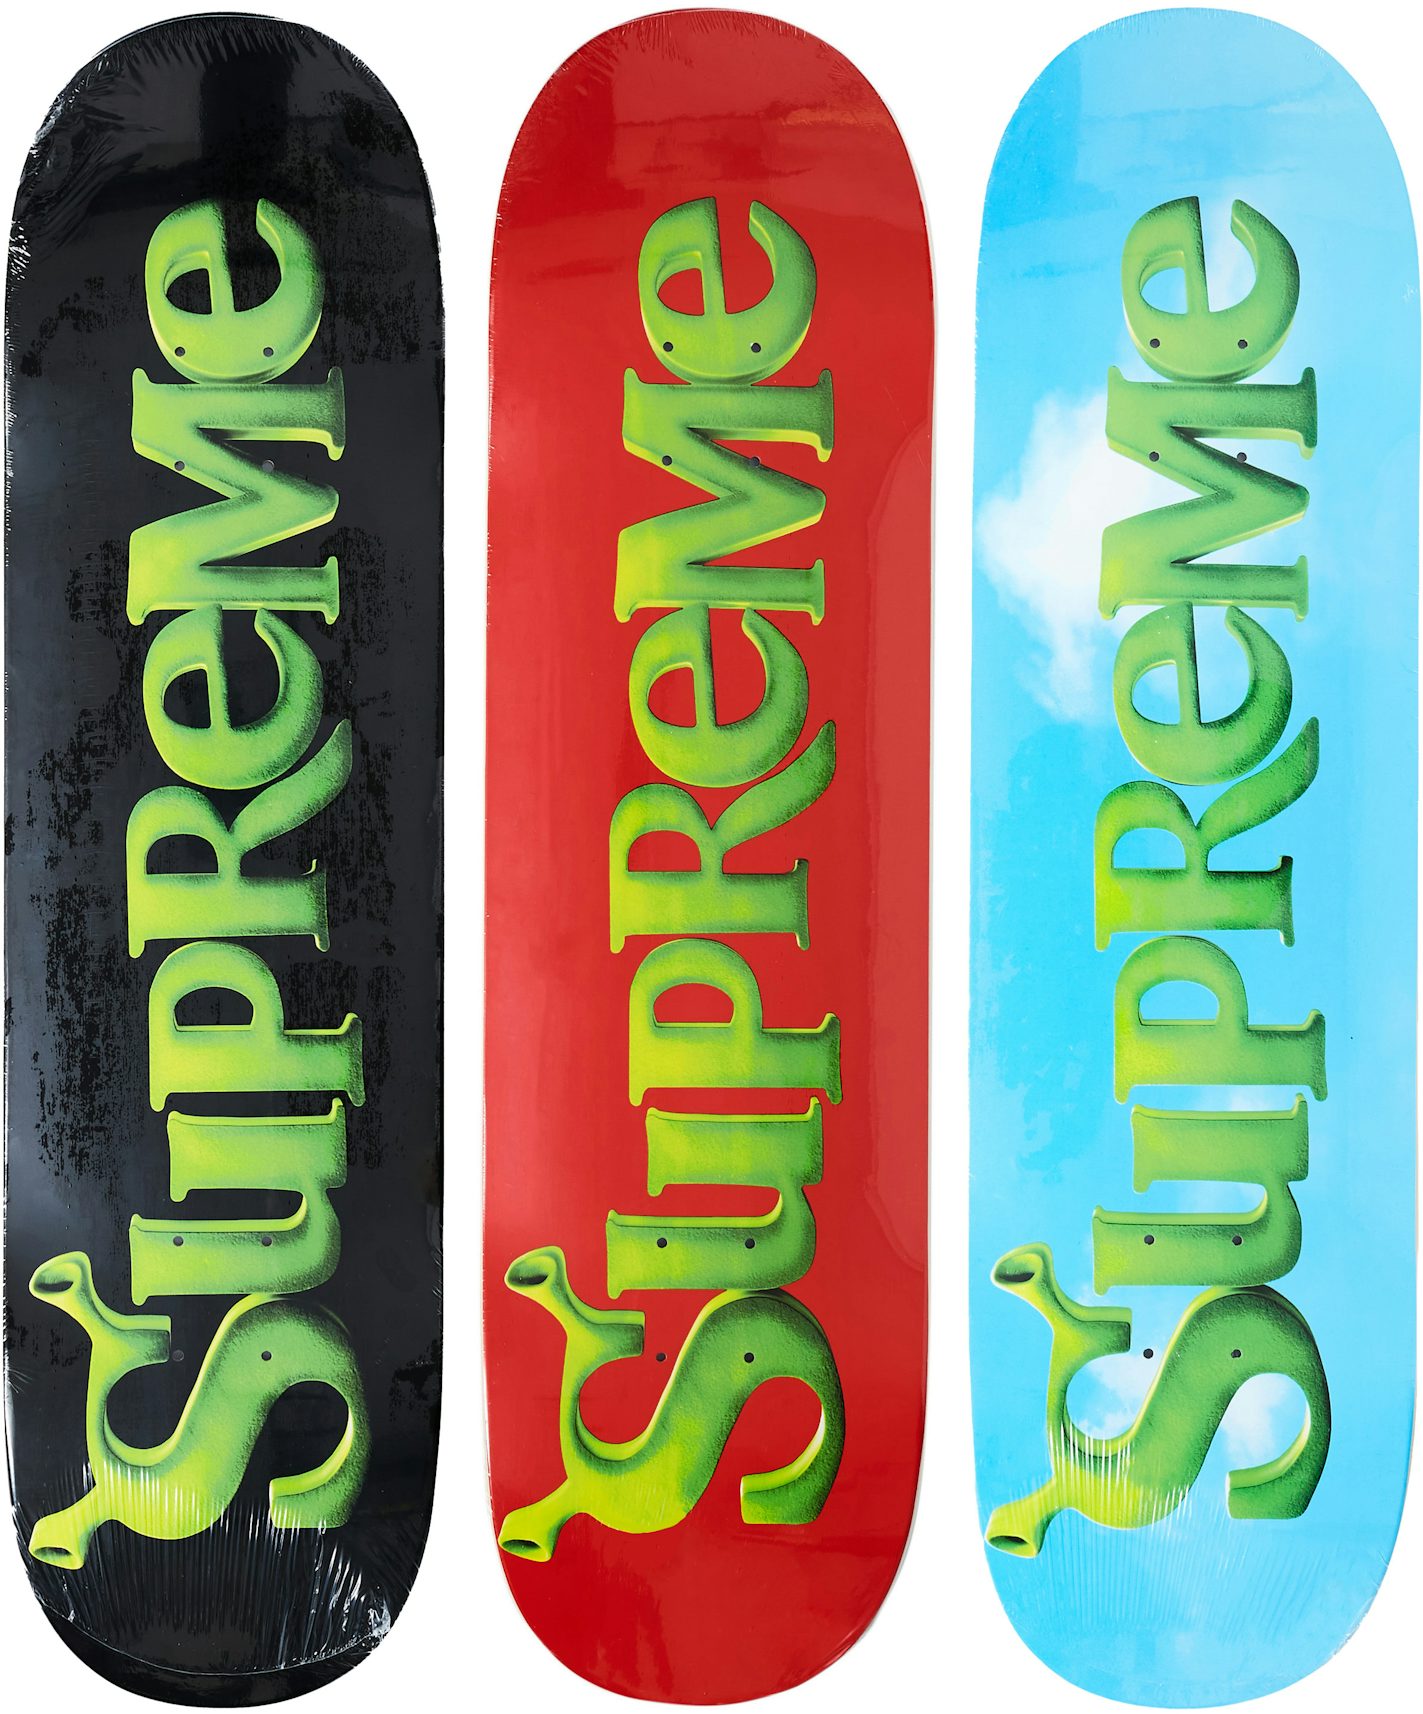 LV Skate Deck - Set of 3 (2000)